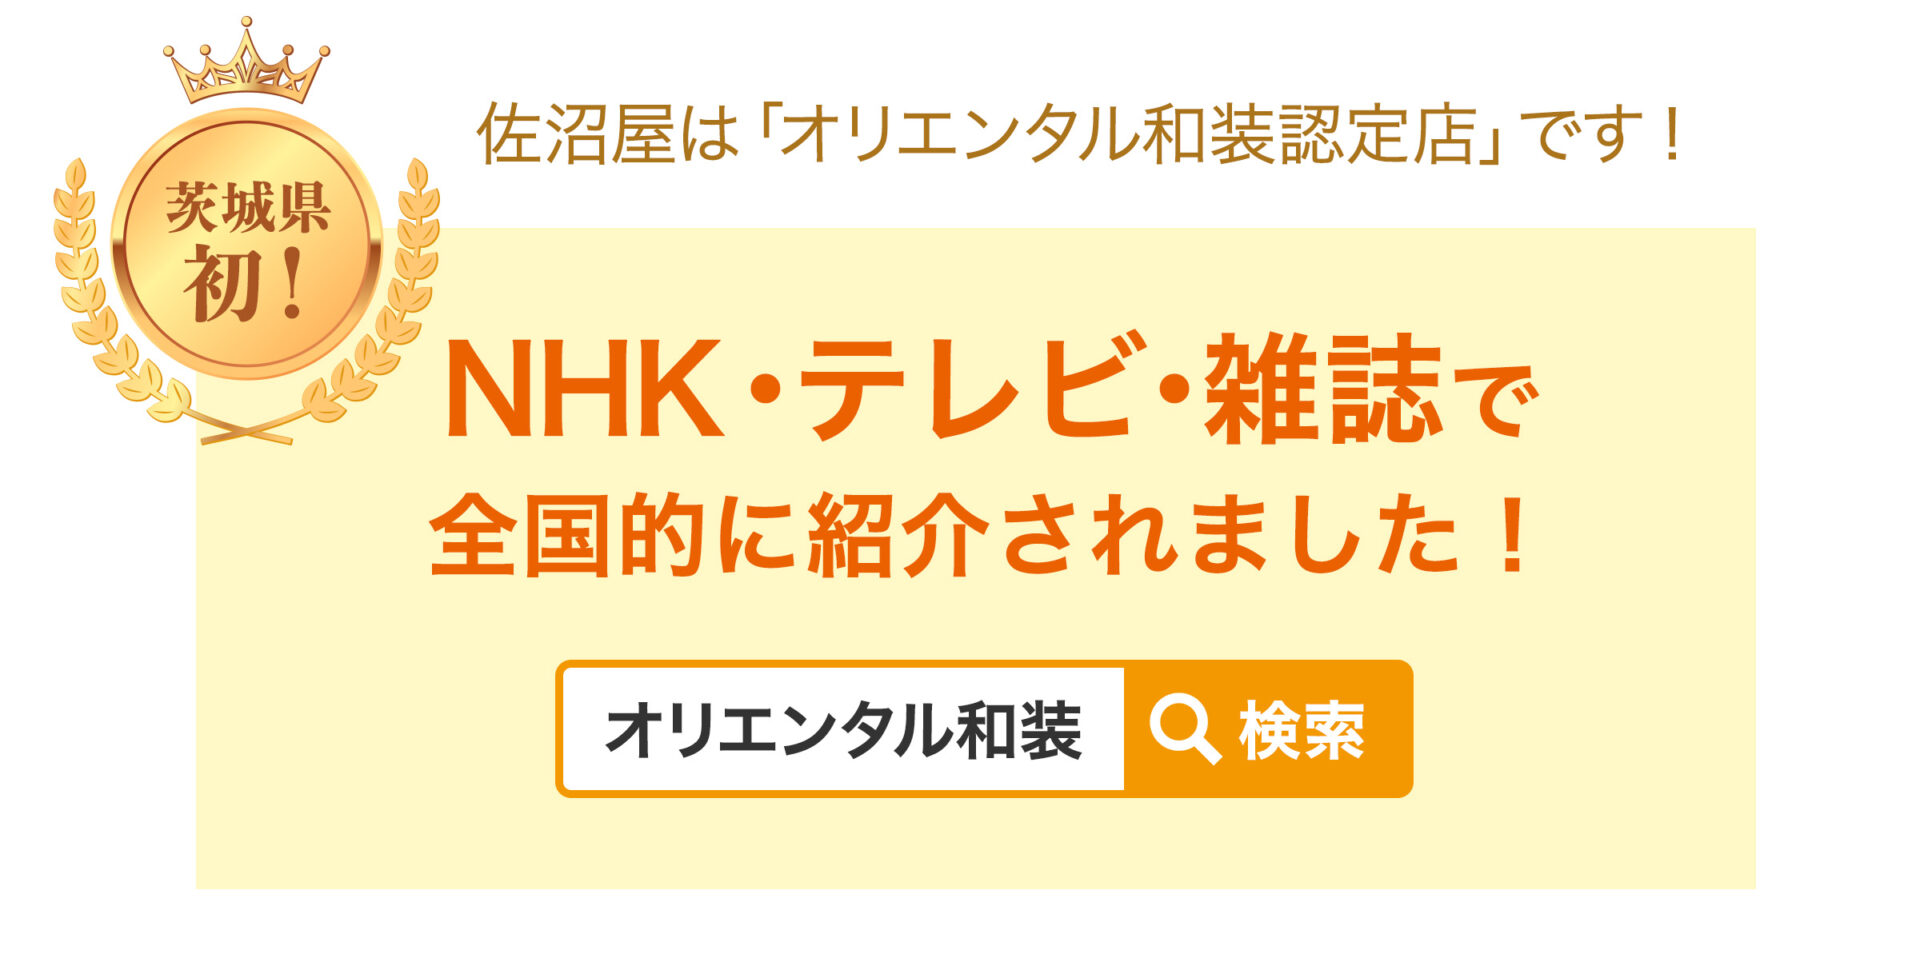 佐沼屋は茨城県初「オリエンタル和装認定店」です！NHK・テレビ・雑誌に全国的に紹介されました。